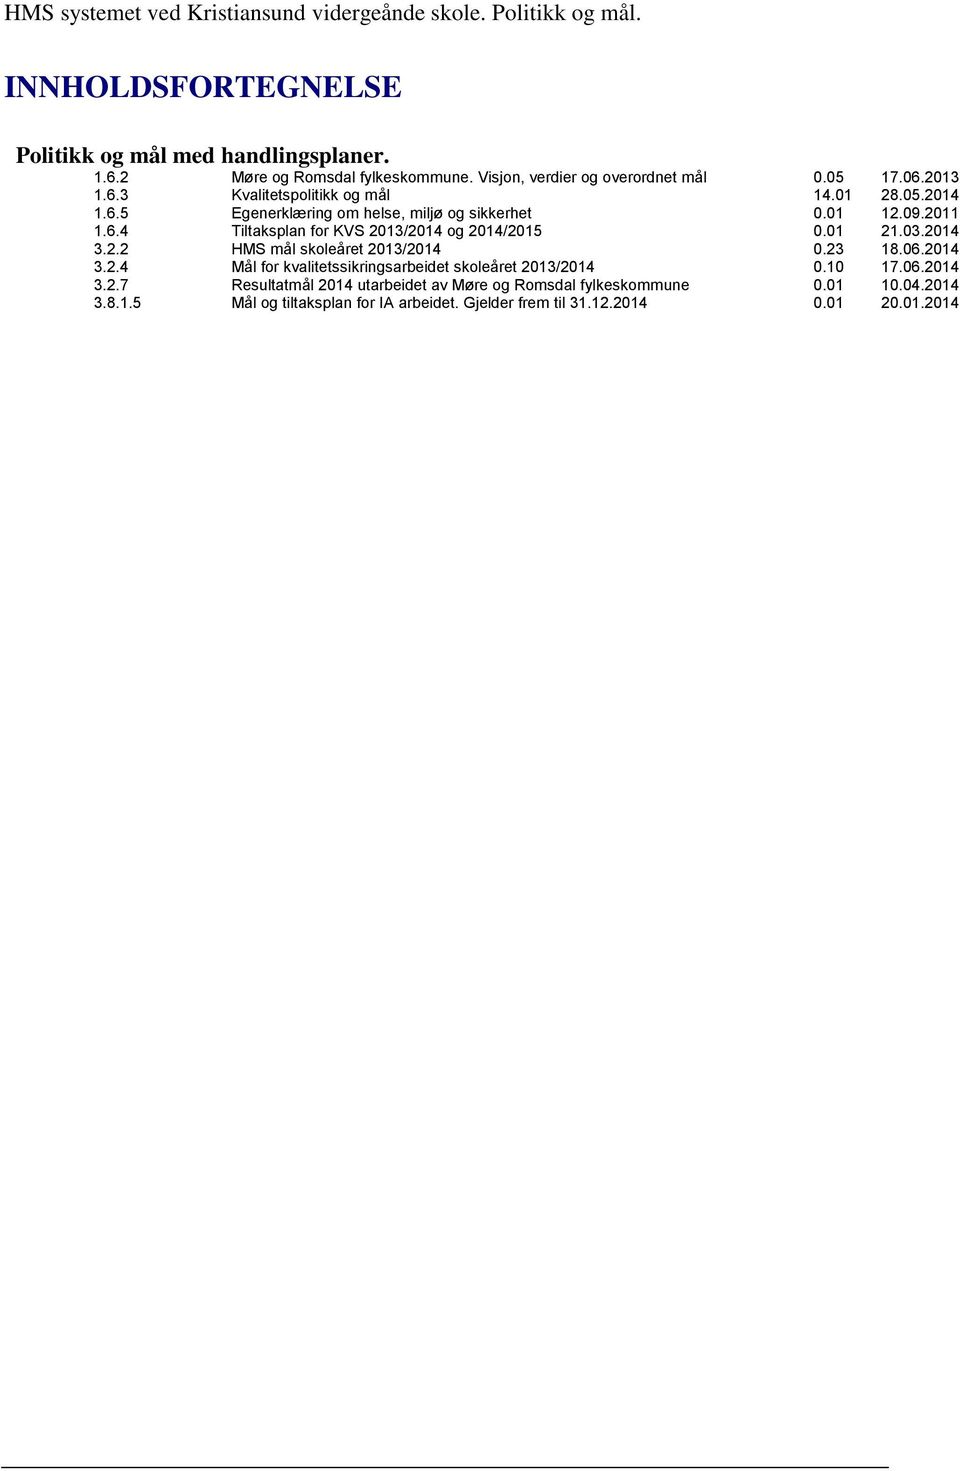 01 21.03.2014 3.2.2 HMS mål skoleåret 2013/2014 0.23 18.06.2014 3.2.4 Mål for kvalitetssikringsarbeidet skoleåret 2013/2014 0.10 17.06.2014 3.2.7 Resultatmål 2014 utarbeidet av Møre og Romsdal fylkeskommune 0.